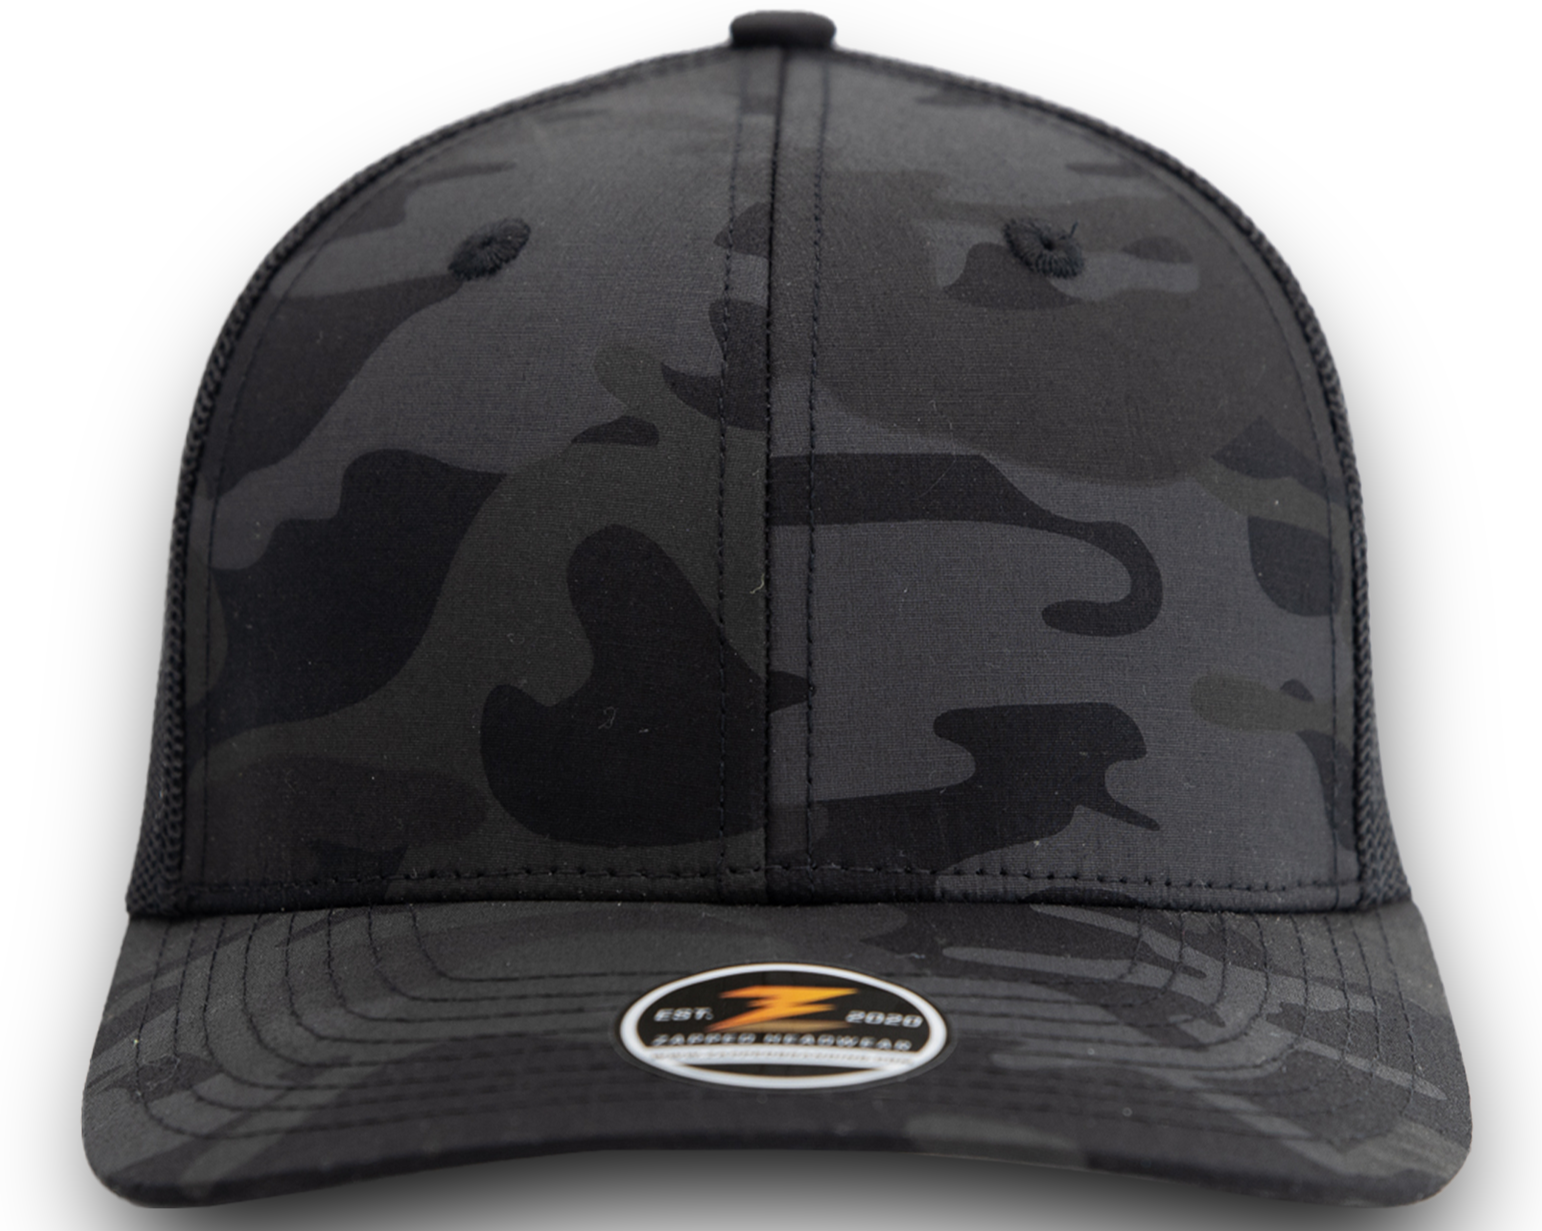 WARRIOR CAMO-Trucker snapback-Zapped Headwear-Black Camo-Snapback- Custom hat-Zapped Headwear